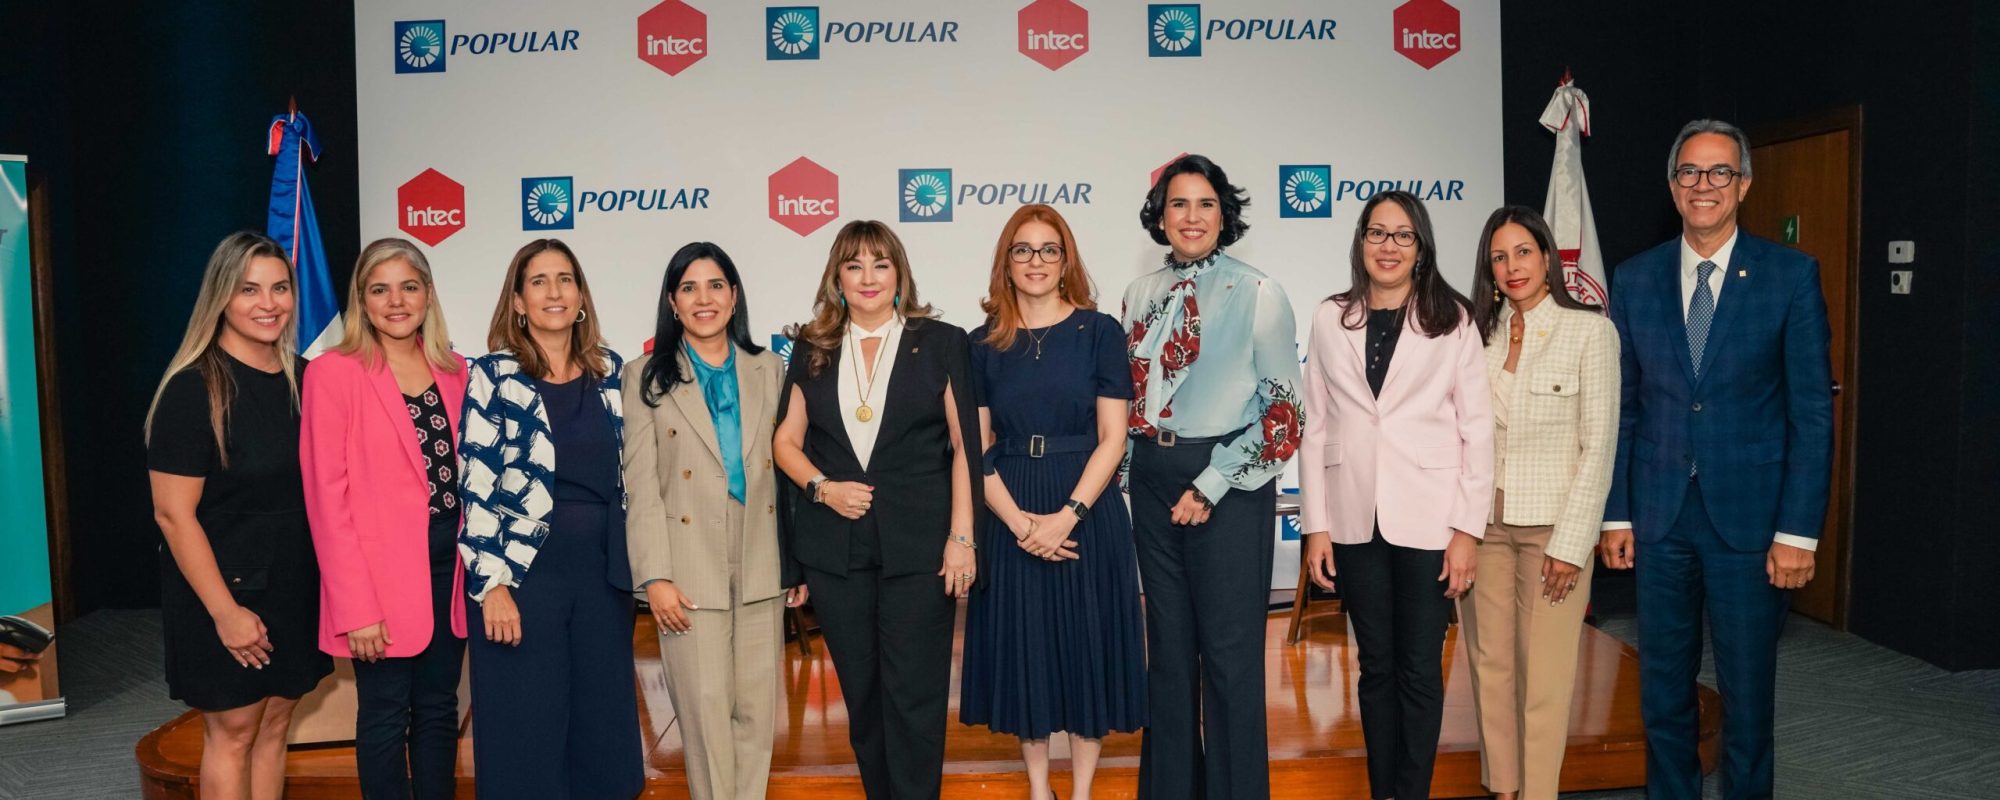 Dinorah Grullón, Heidi Sánchez, Rosario Aróstegui, Mariel Bera, Antonia Antón de Hernández